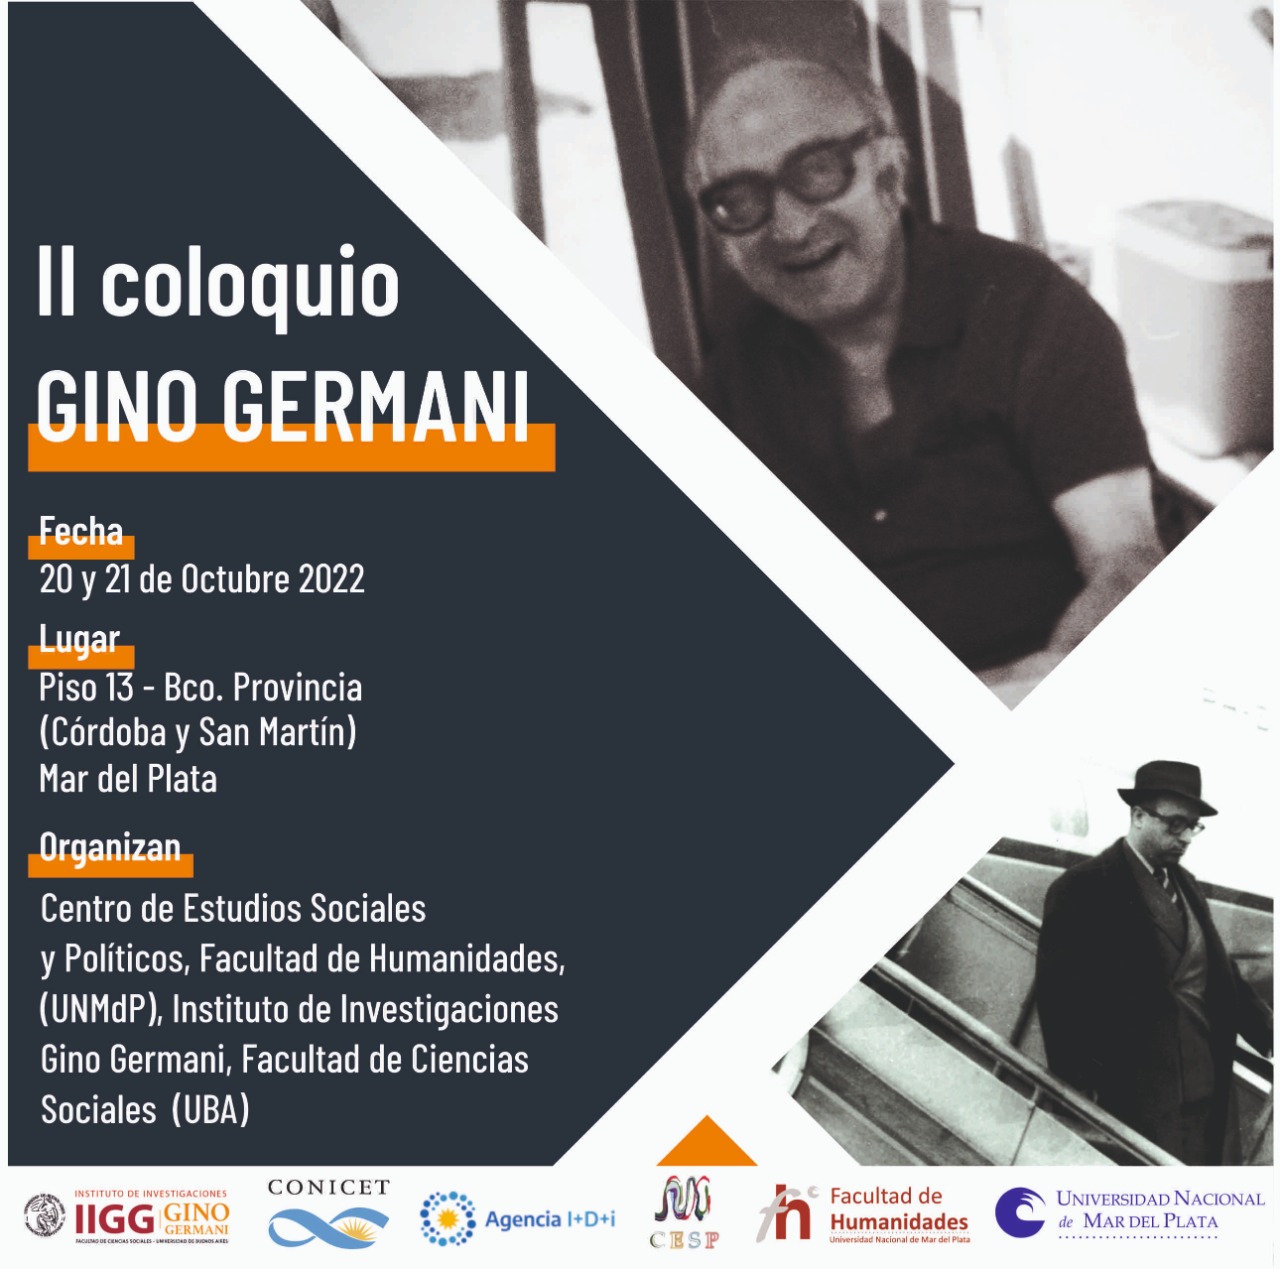 II Coloquio Gino Germani. Vigencia, actualidad y revisión de su legado